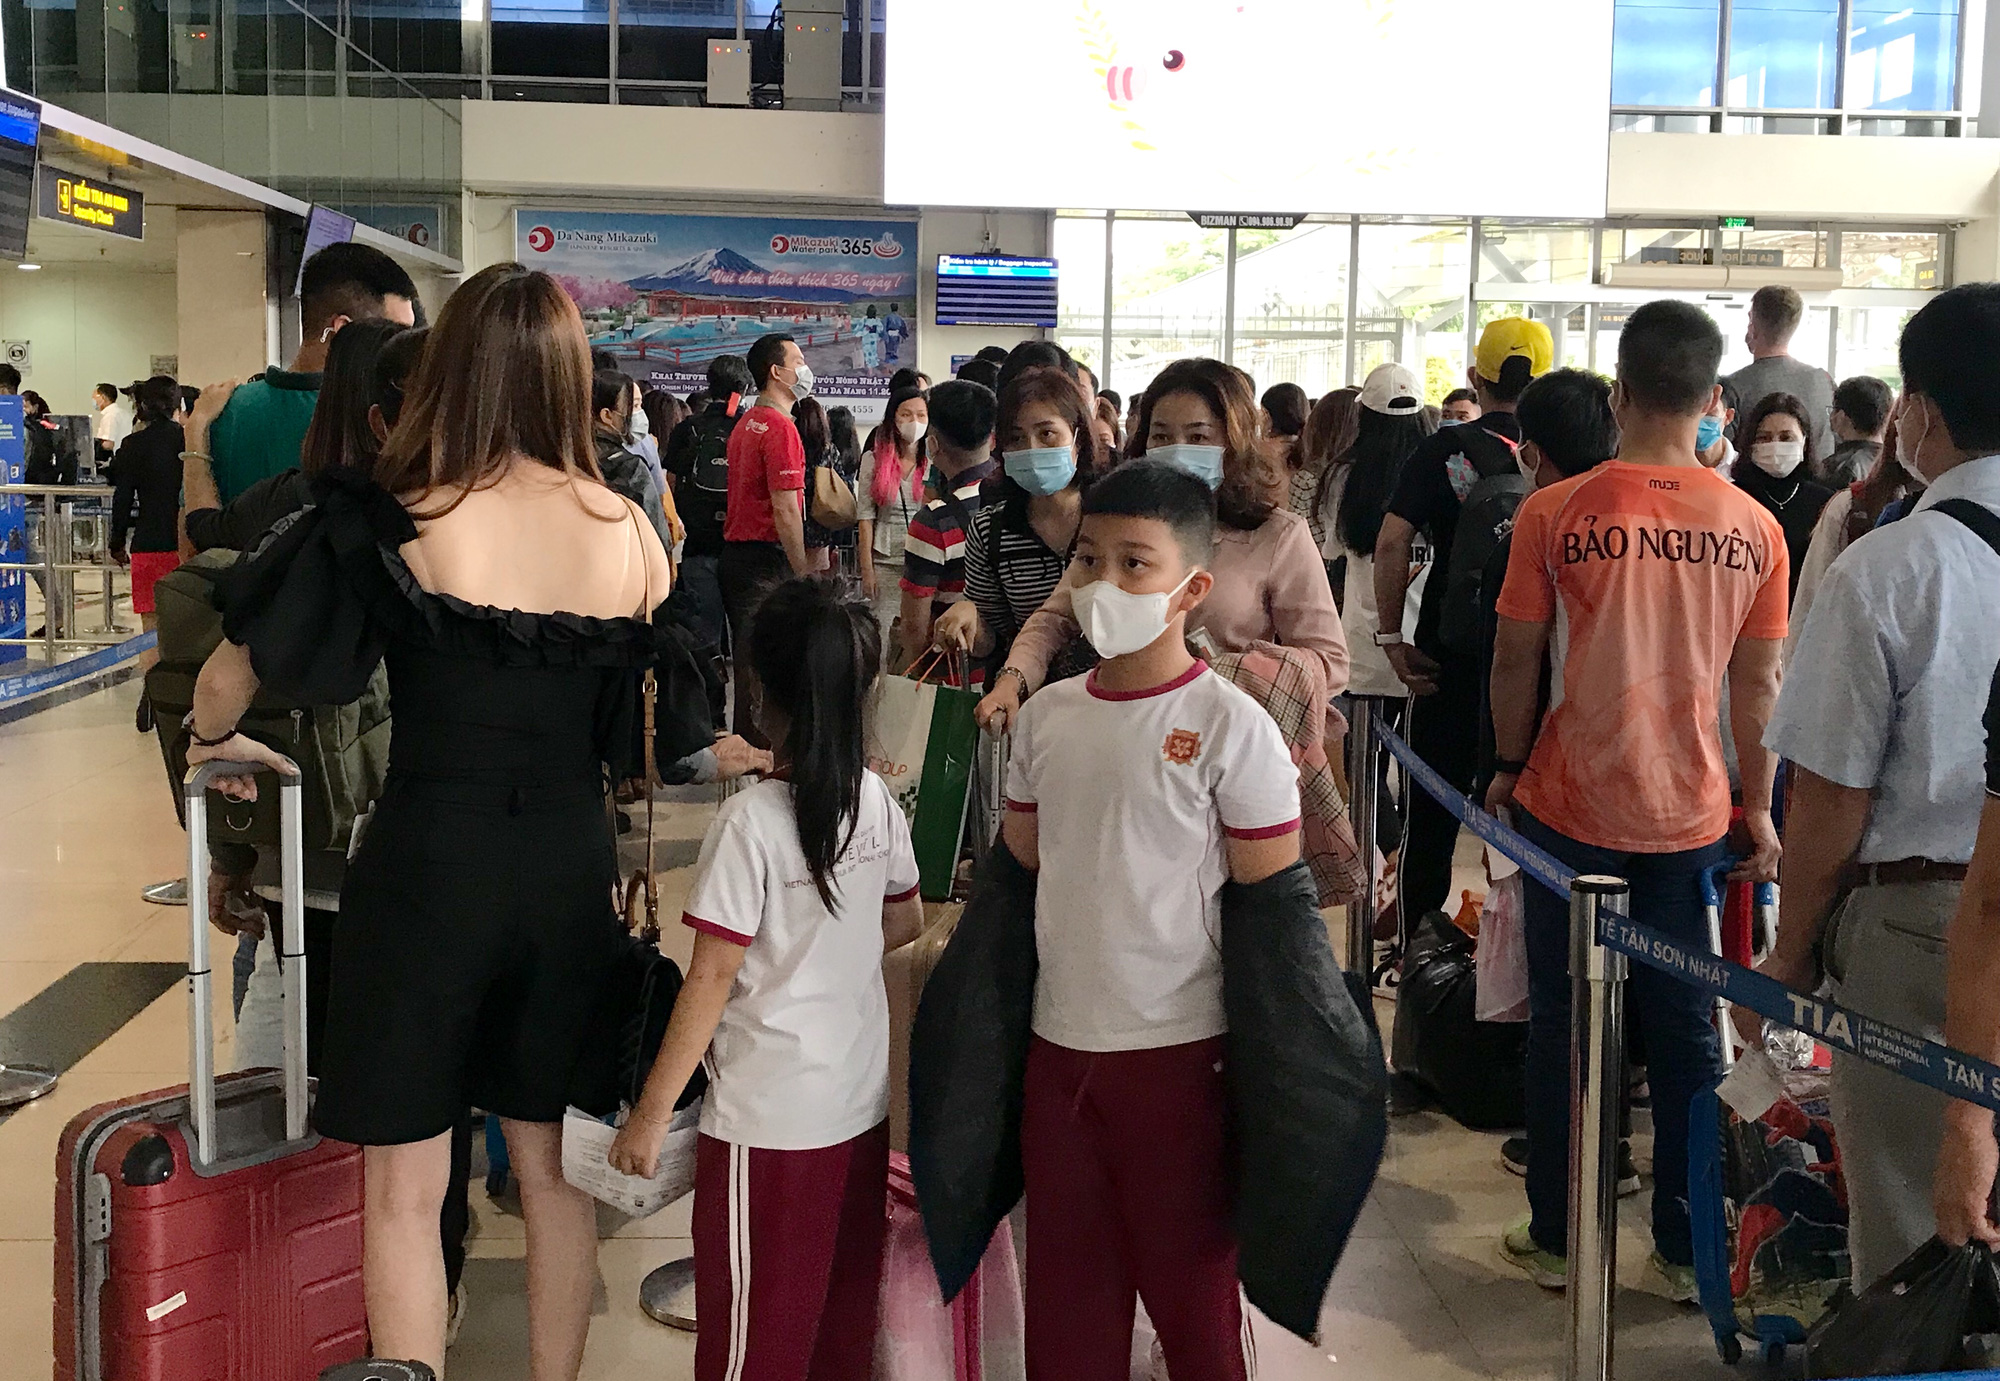 Người dân bắt đầu đổ về quê, sân bay Tân Sơn Nhất đông nghẹt, xếp hàng hơn nửa tiếng chờ check-in - Ảnh 7.